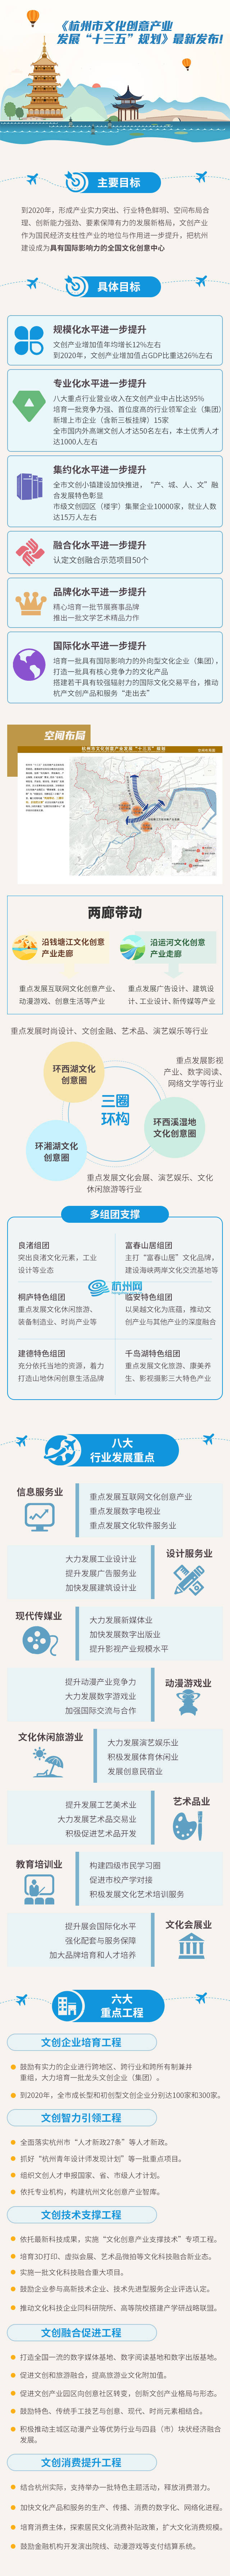 杭州市文化创意产业发展“十三五”规划最新发布